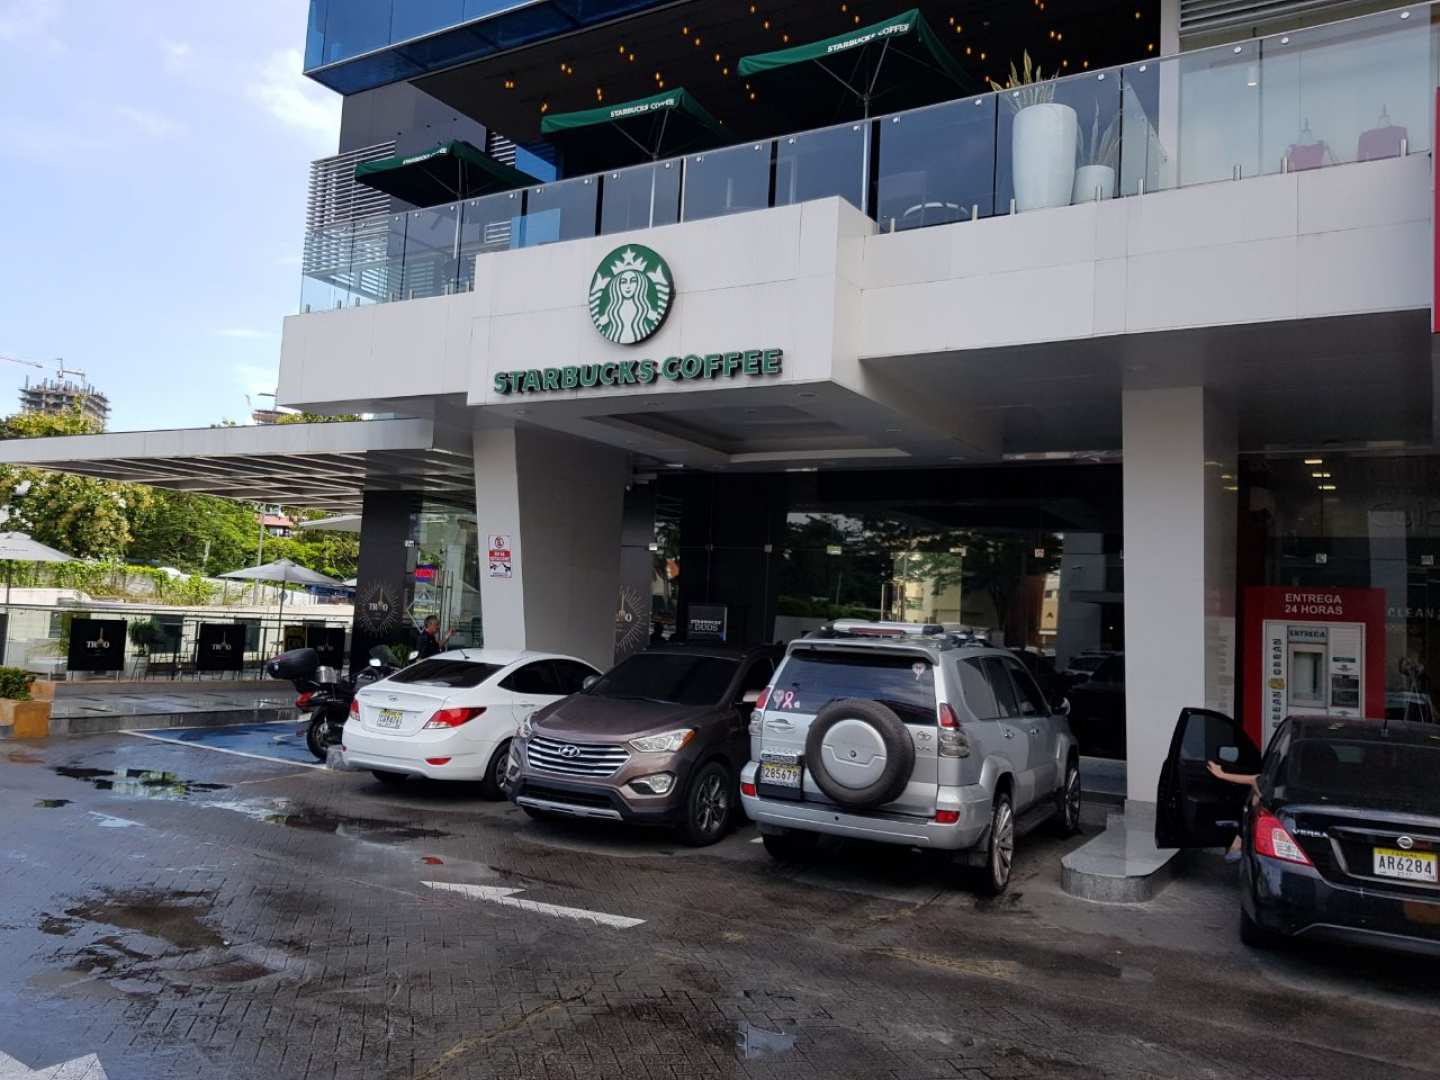 Starbucks (Via Brasil)